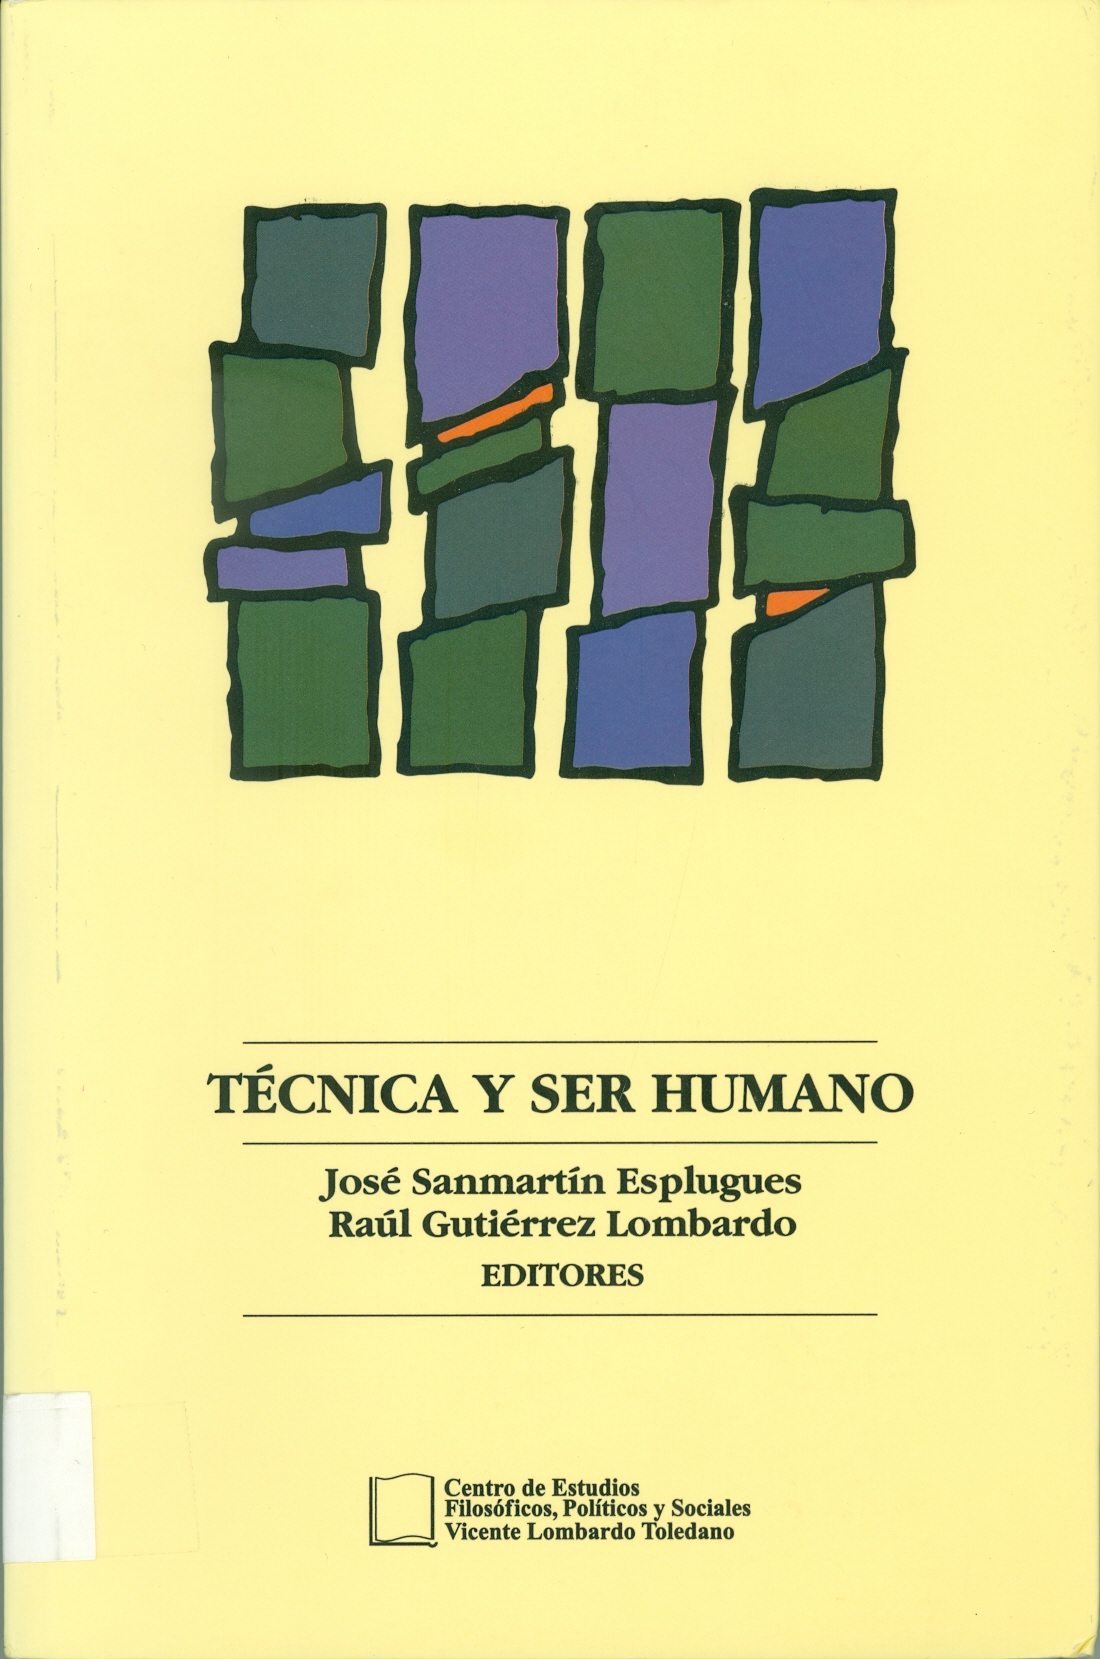 Imagen de portada del libro Técnica y ser humano